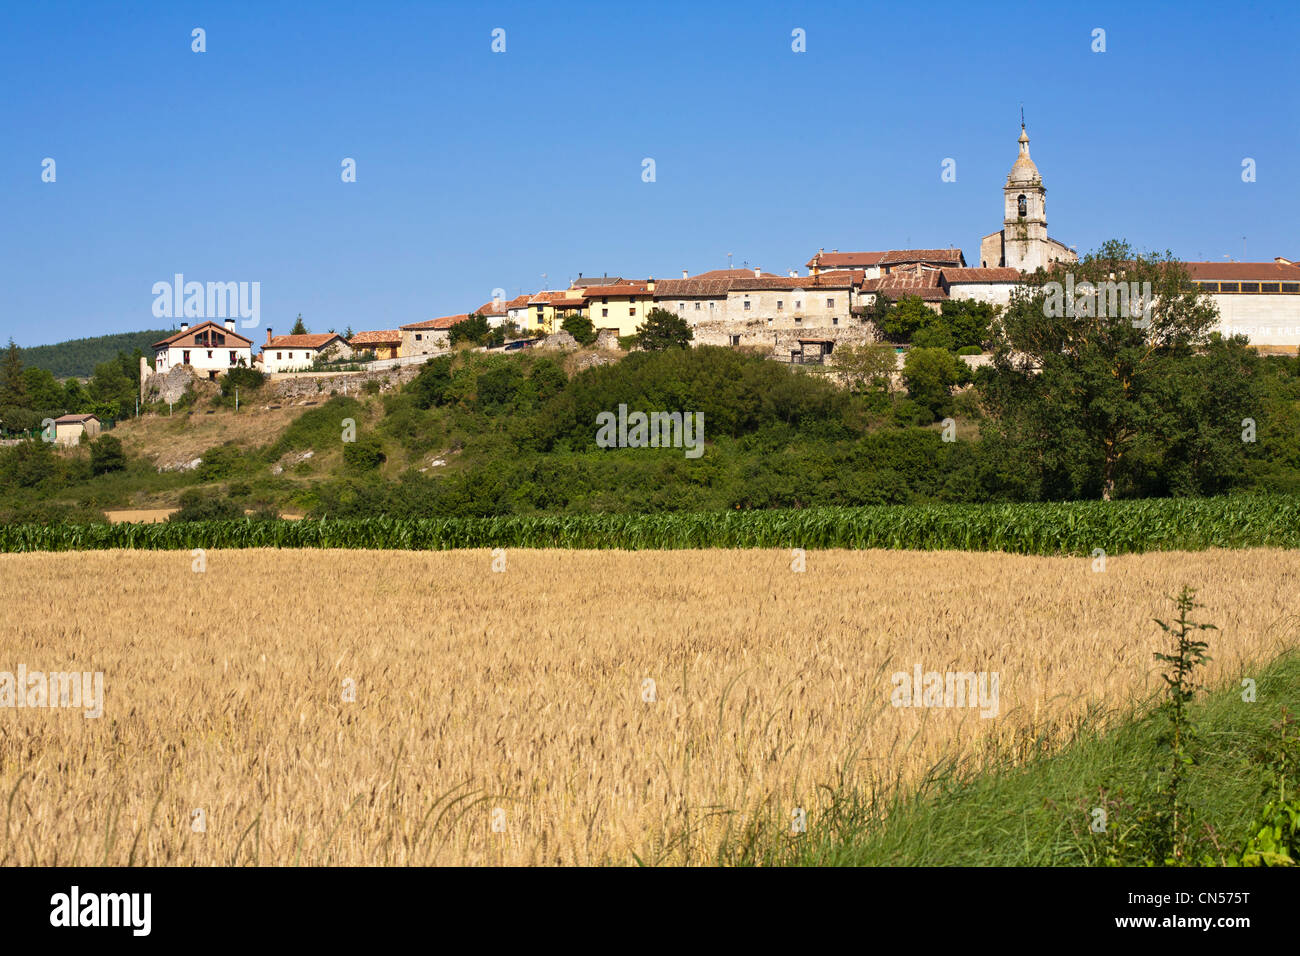 Spanien, Weizen und Mais Felder am Fuße des Dorfes Alava, Baskenland, Urizaharra (Peñacerrada in spanischer Sprache) Stockfoto